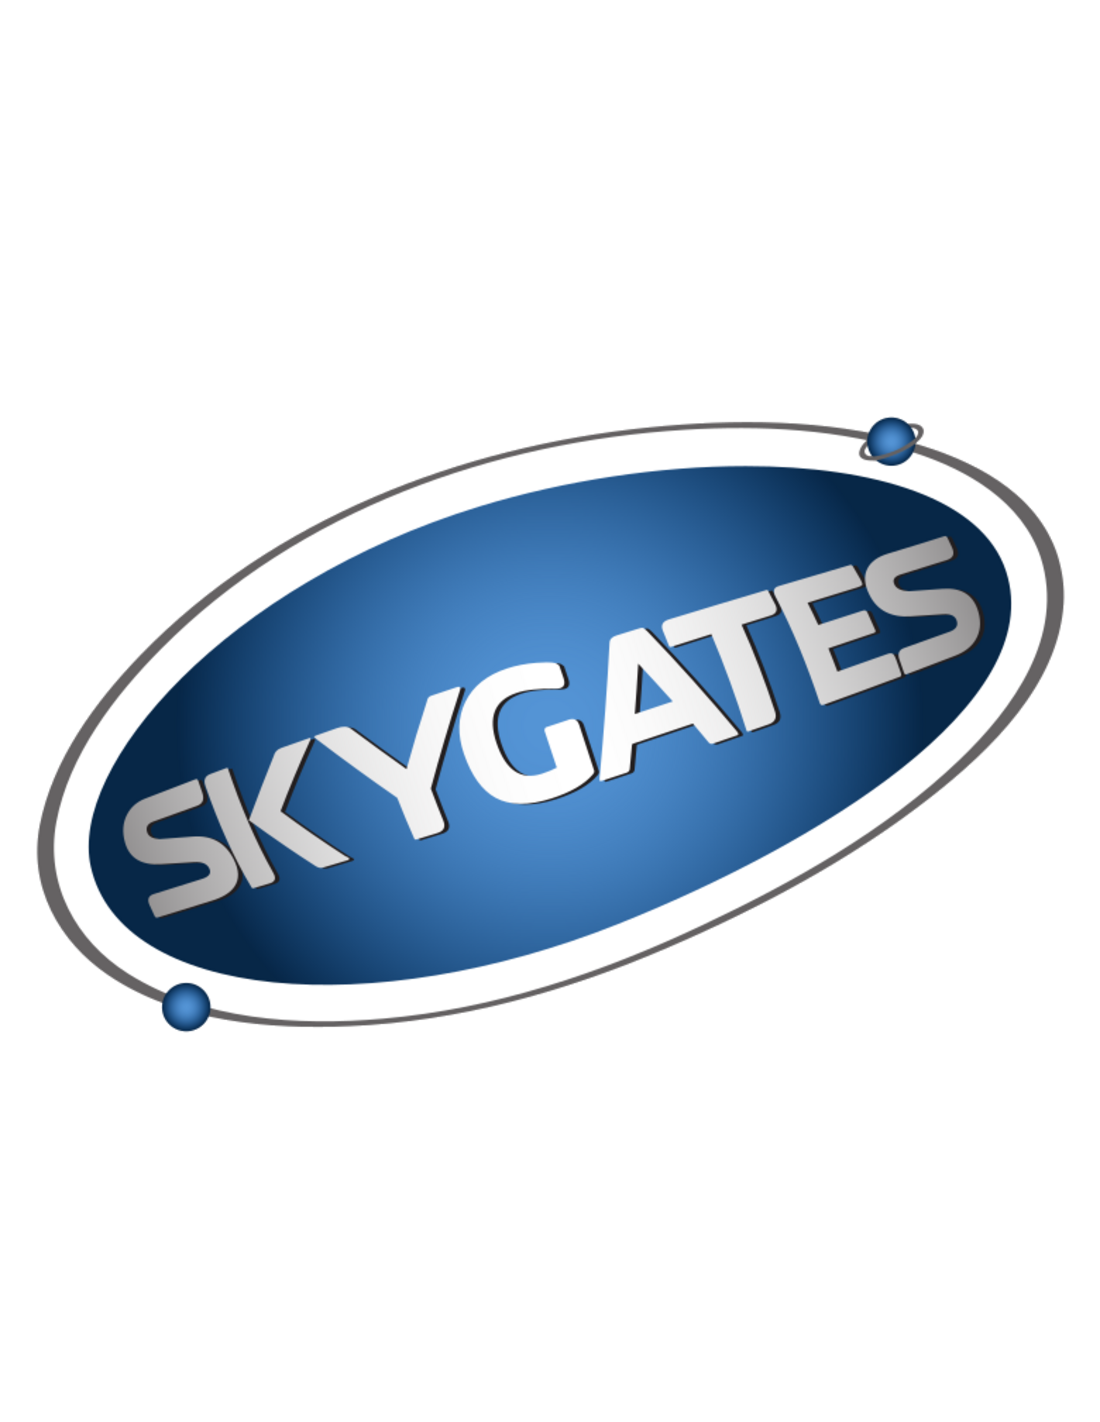 Sky Gates